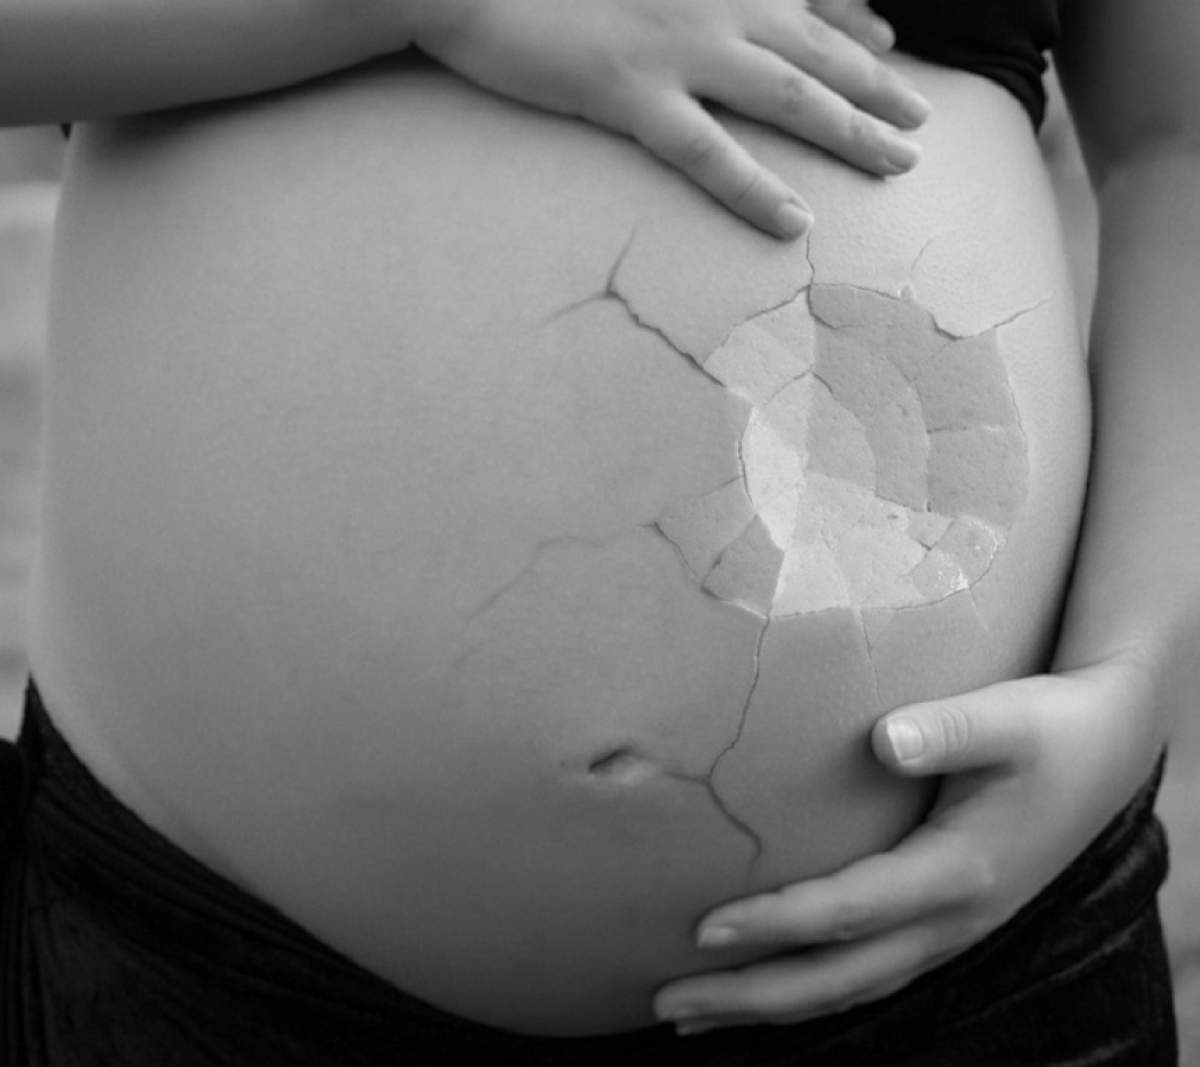 Semnele producerii unui avort spontan. Multe femei însărcinate ignoră simptomele banale